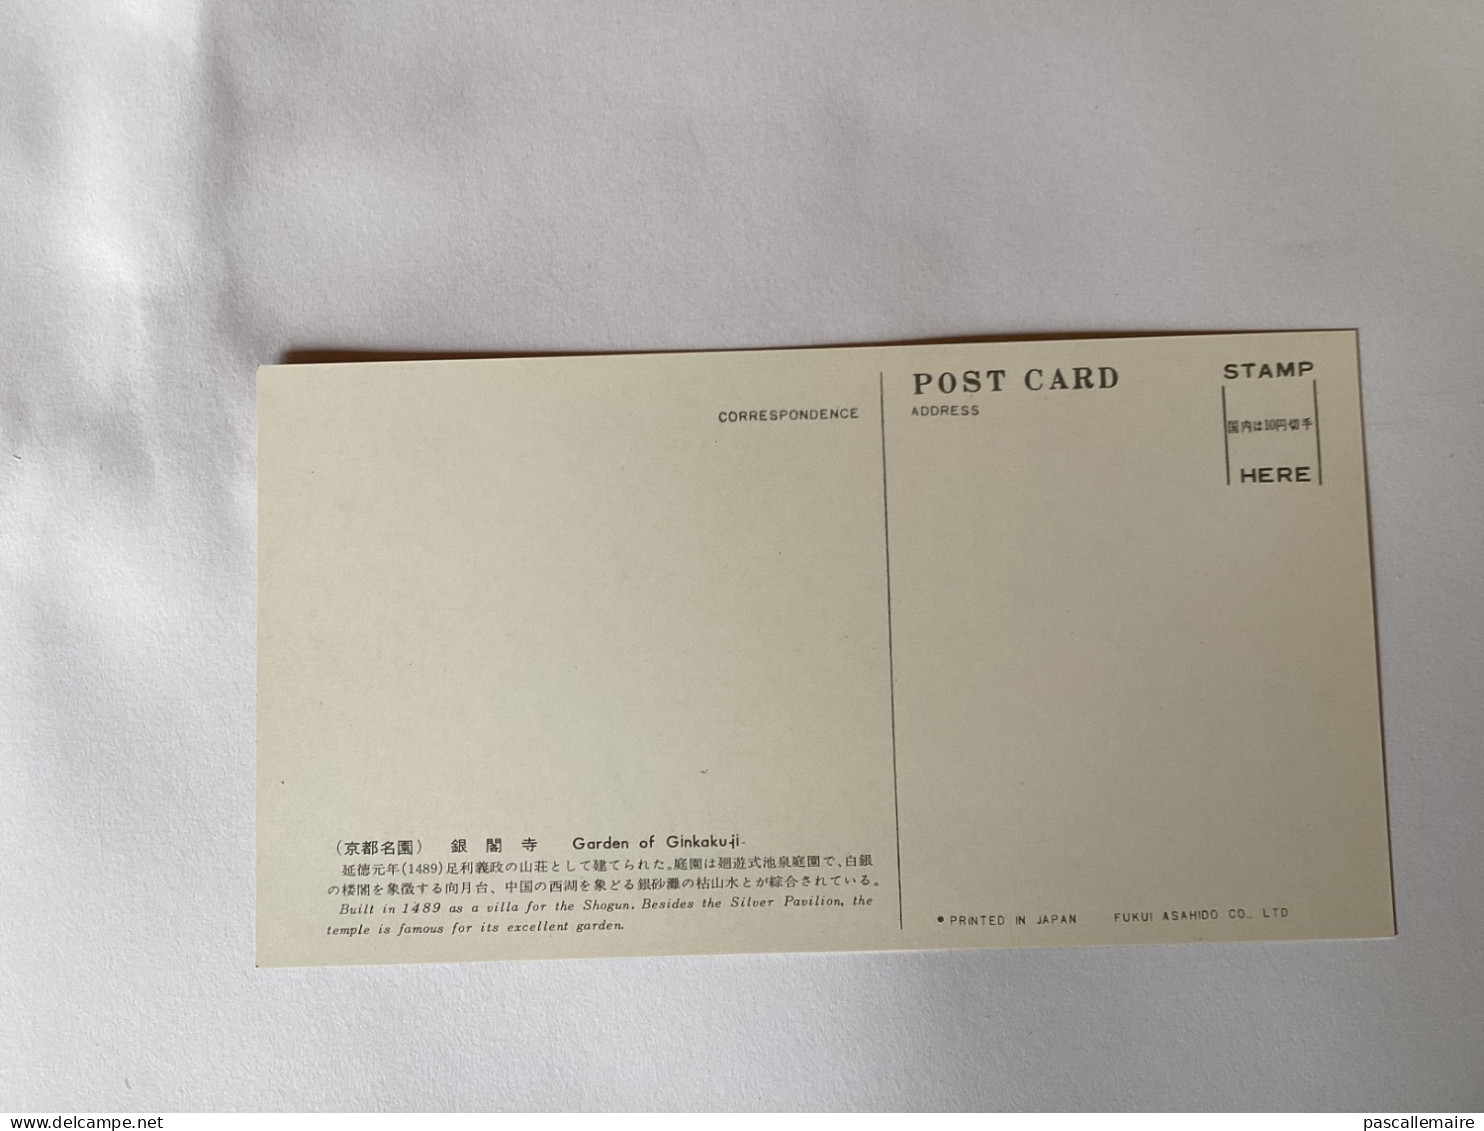 8 cartes postales gardens in Kyoto dans les années 1960